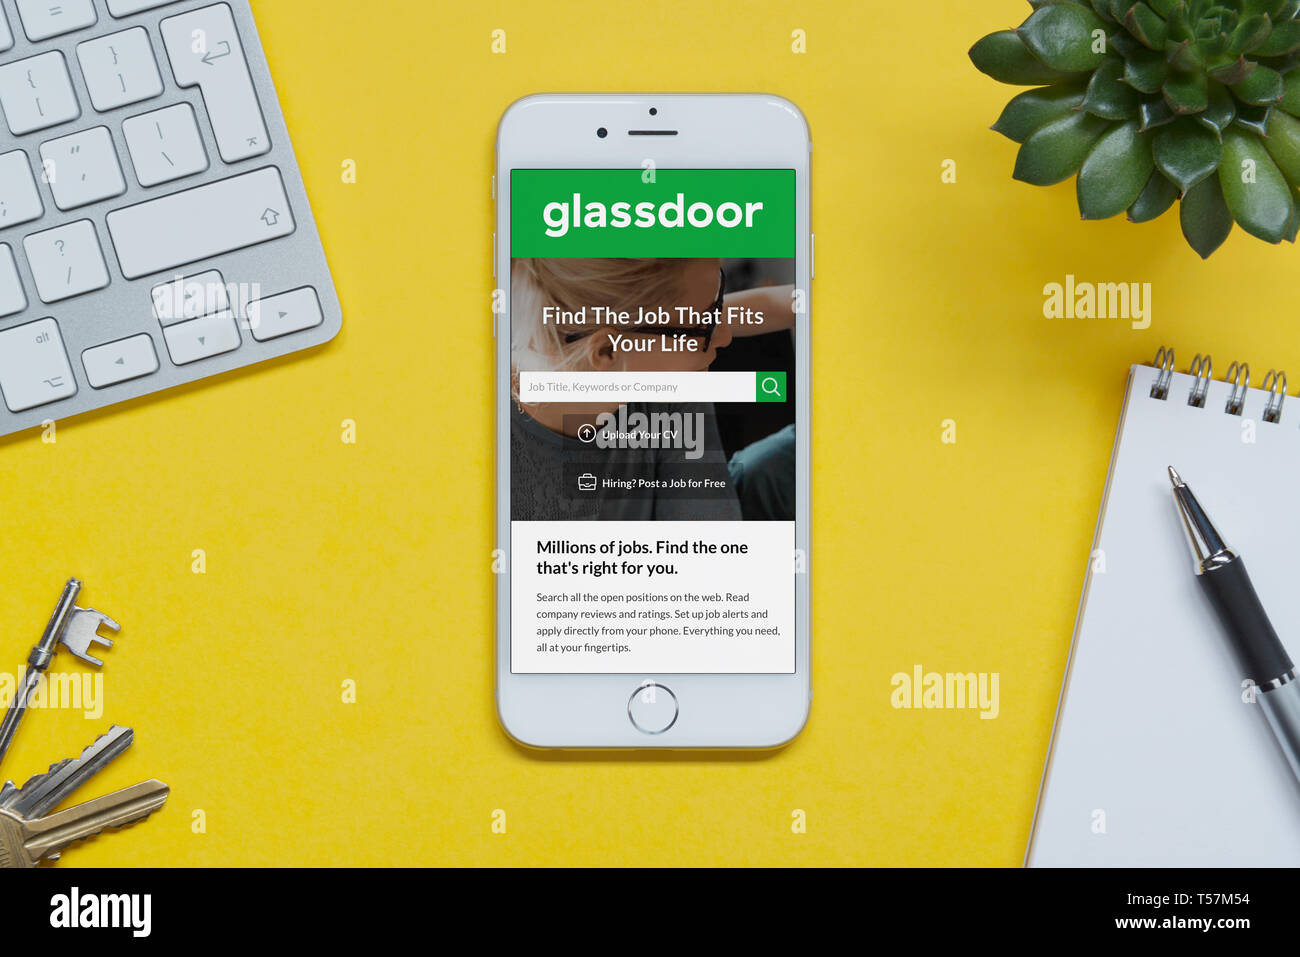 Ein iPhone mit der Glassdoor website ruht auf einem gelben Hintergrund Tabelle mit einer Tastatur, Tasten, Notepad und Anlage (nur redaktionelle Nutzung). Stockfoto